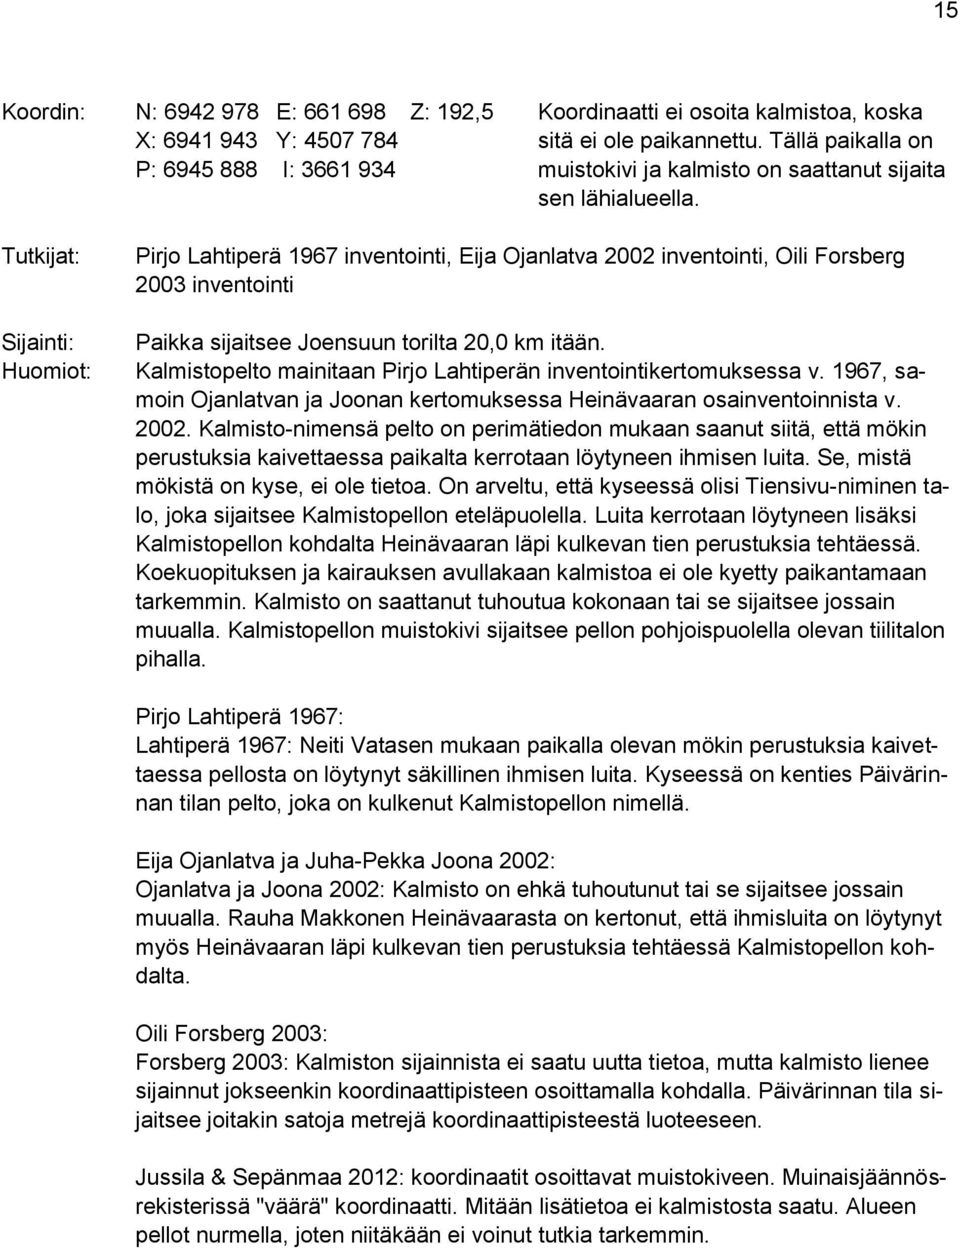 Tutkijat: Sijainti: Huomiot: Pirjo Lahtiperä 1967 inventointi, Eija Ojanlatva 2002 inventointi, Oili Forsberg 2003 inventointi Paikka sijaitsee Joensuun torilta 20,0 km itään.